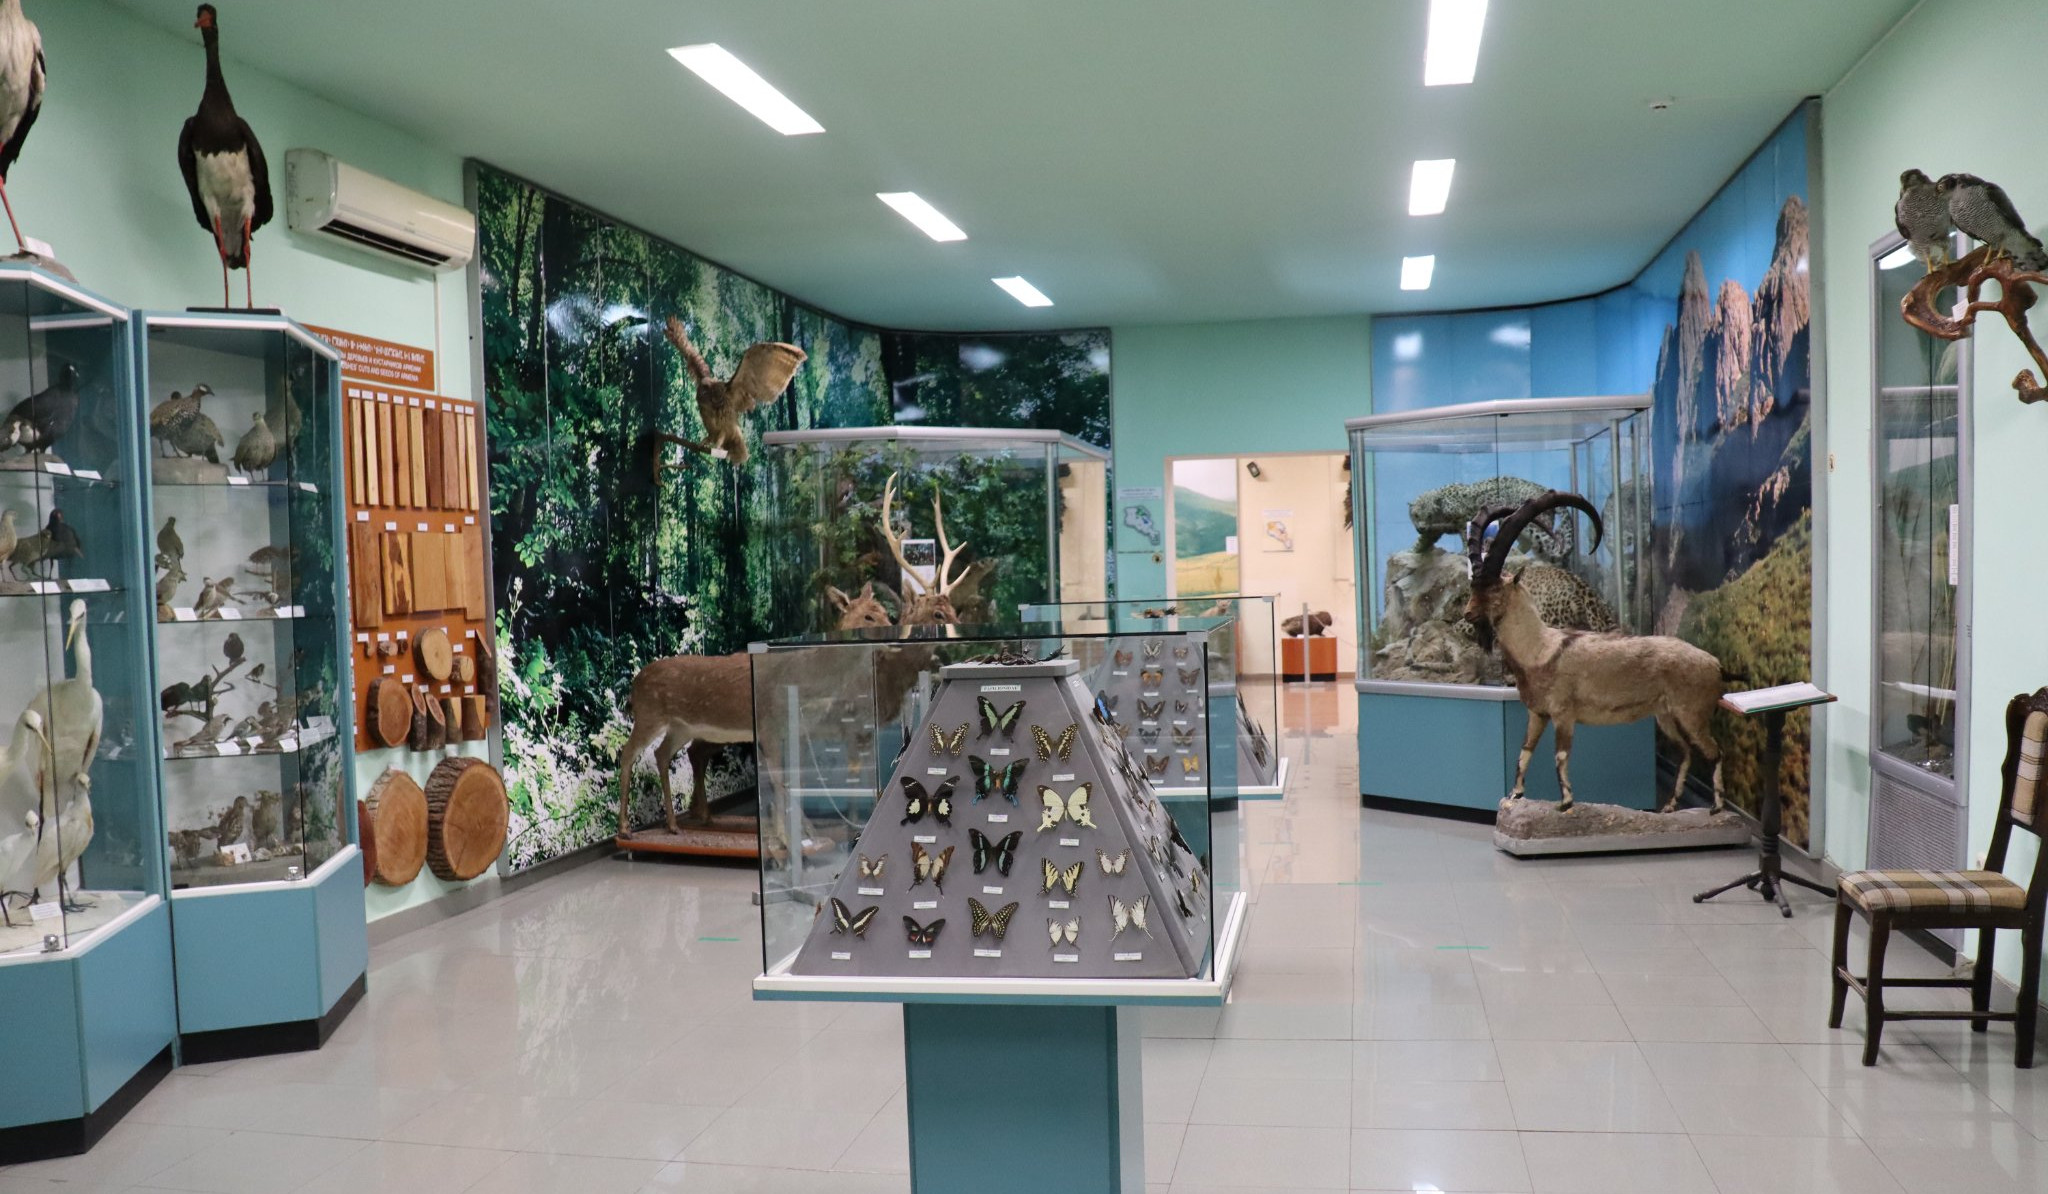 Հայաստանի բնության թանգարանը հրավիրում է միասին տոնելու Թանգարանների միջազգային օրը. մուտքն անվճար է